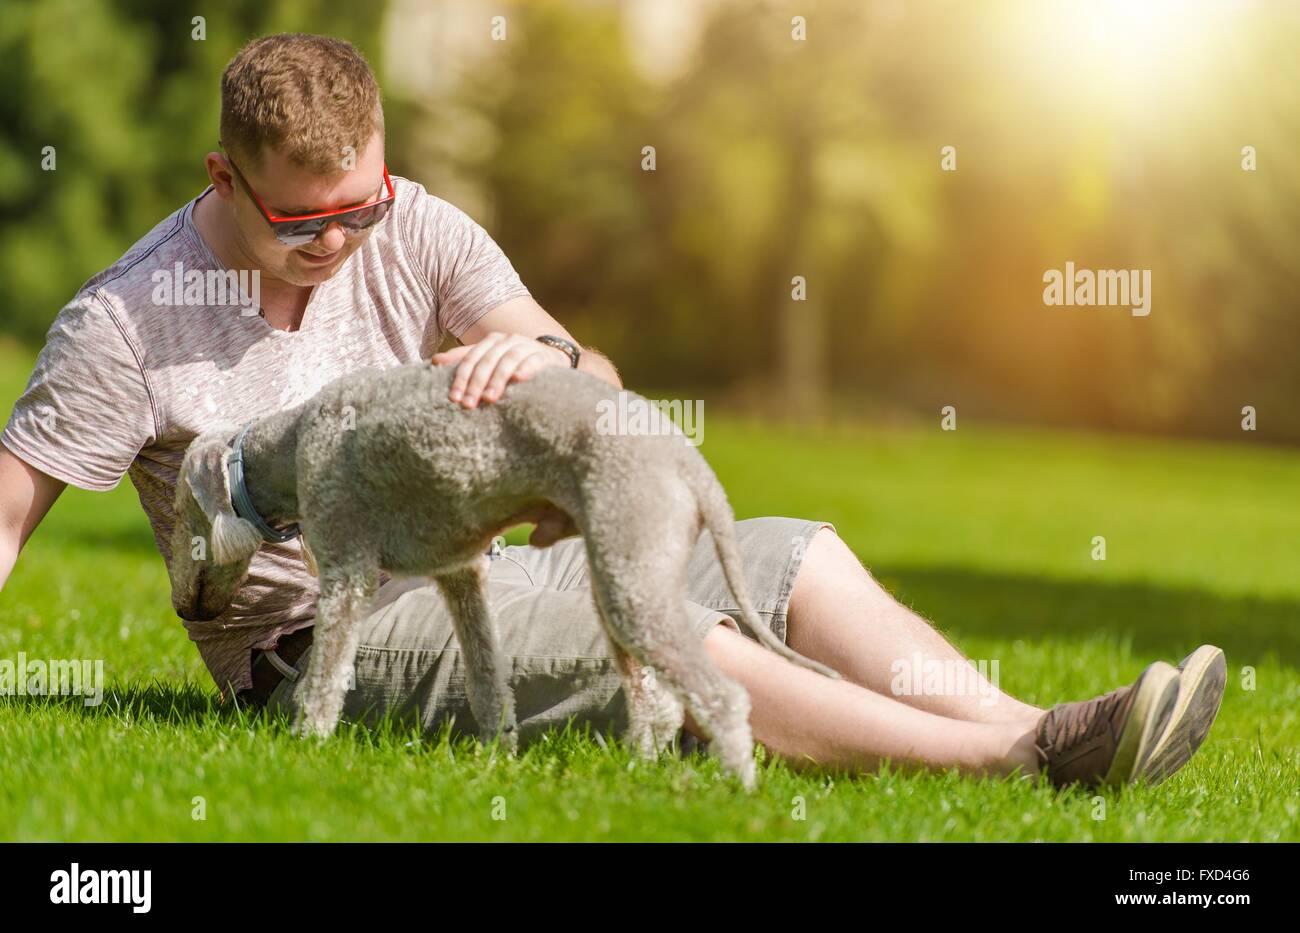 Männer spielen mit seinem Bedlington Terrier Hund im Park Sommer tagsüber. Hund des Menschen besten Freundes. Stockfoto